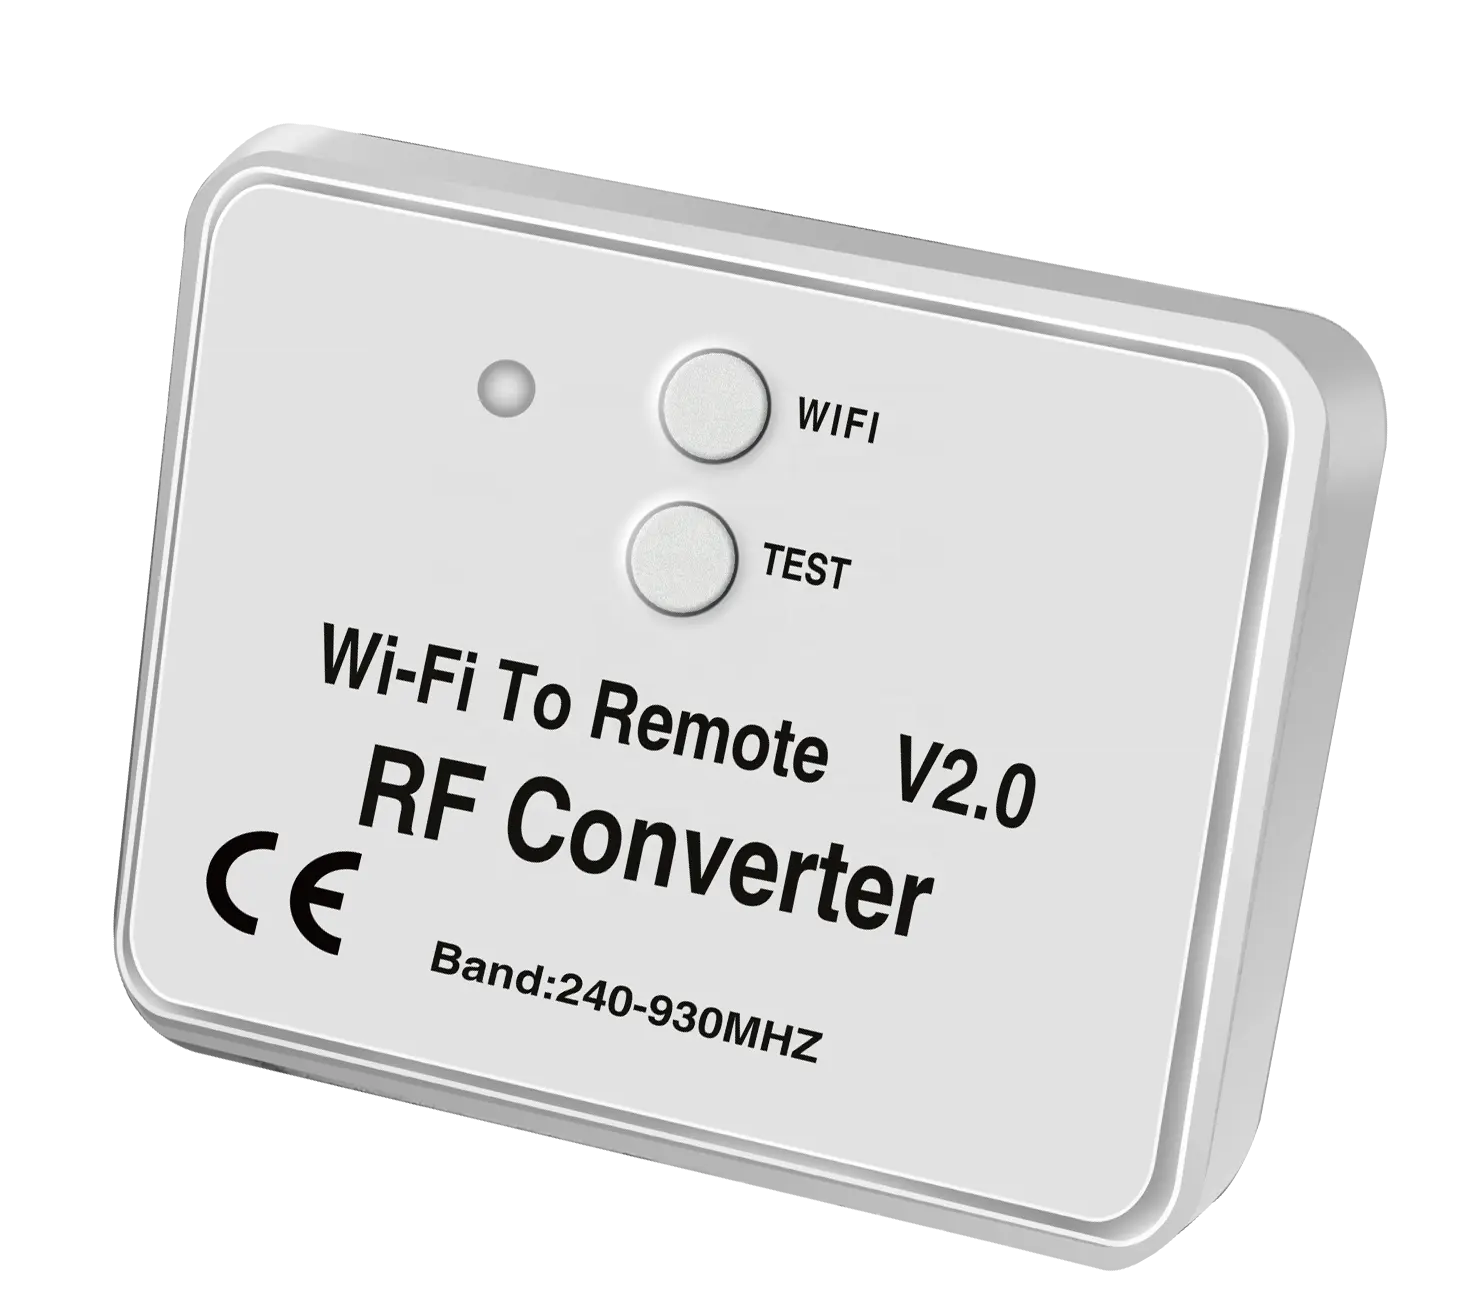 El nuevo artículo 300-982MHz DC5V WiFi remoto RF convertidor de señal Yet6956